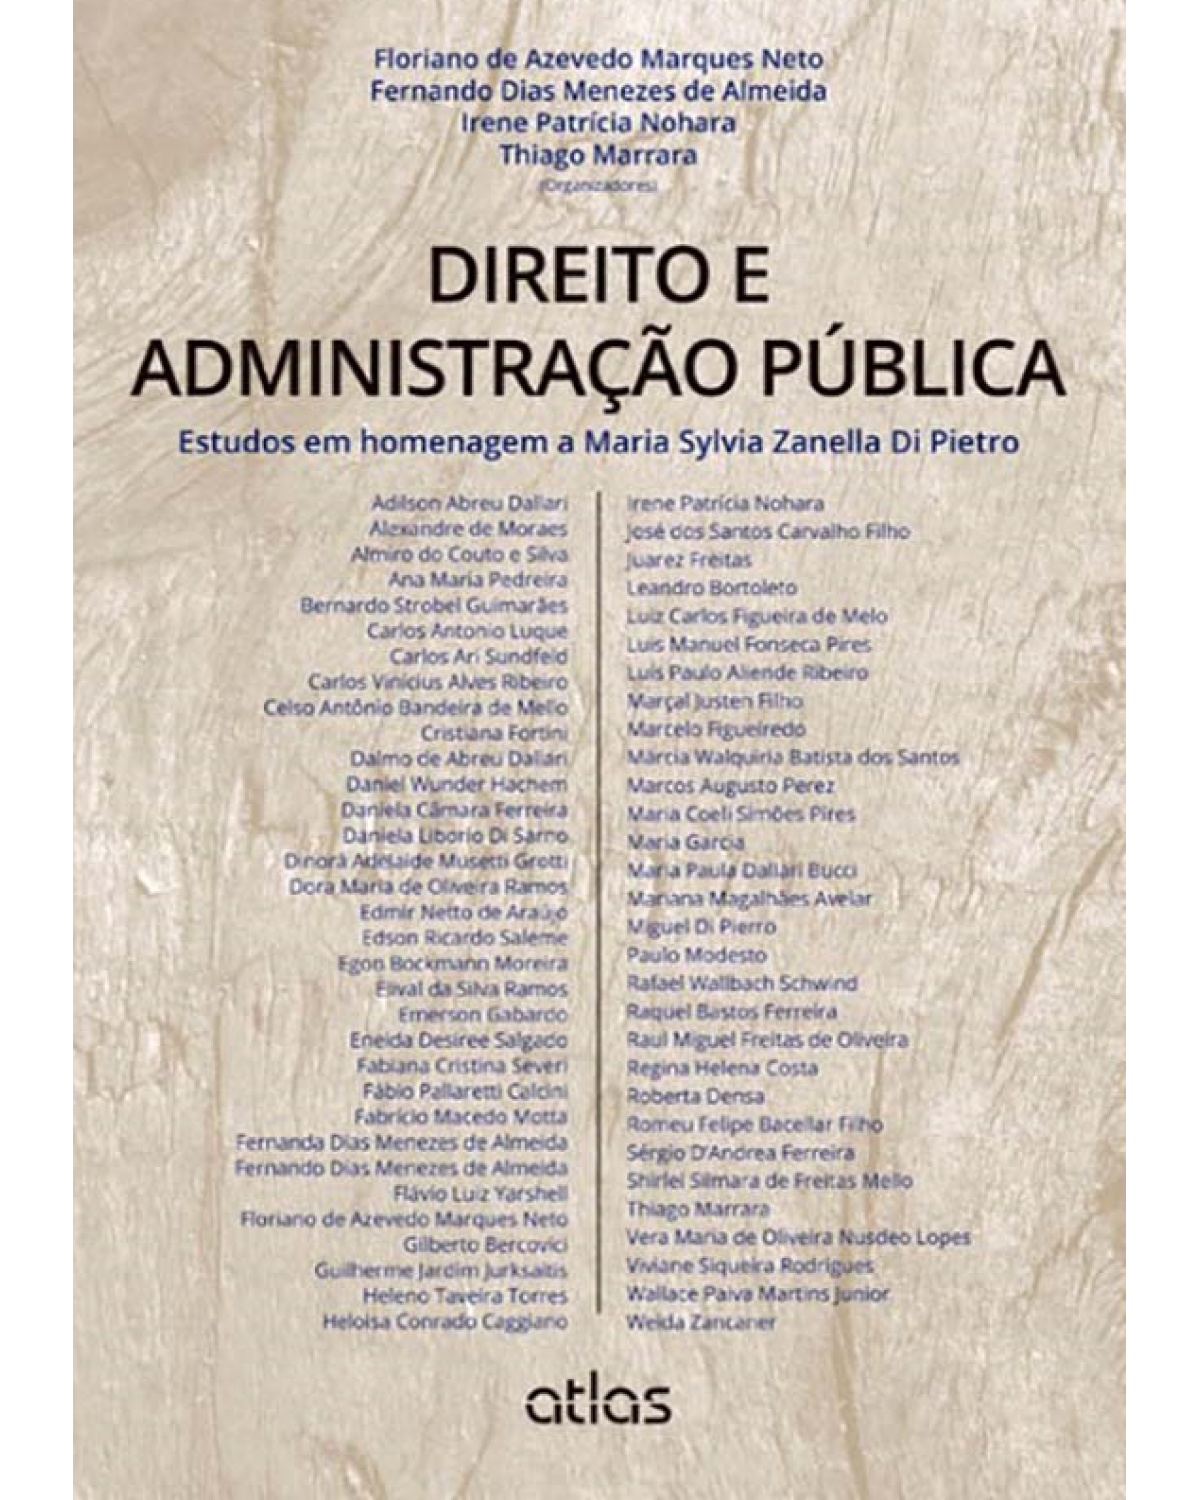 Direito e administração pública - Estudos em homenagem a Maria Sylvia Zanella Di Pietro - 1ª Edição | 2013